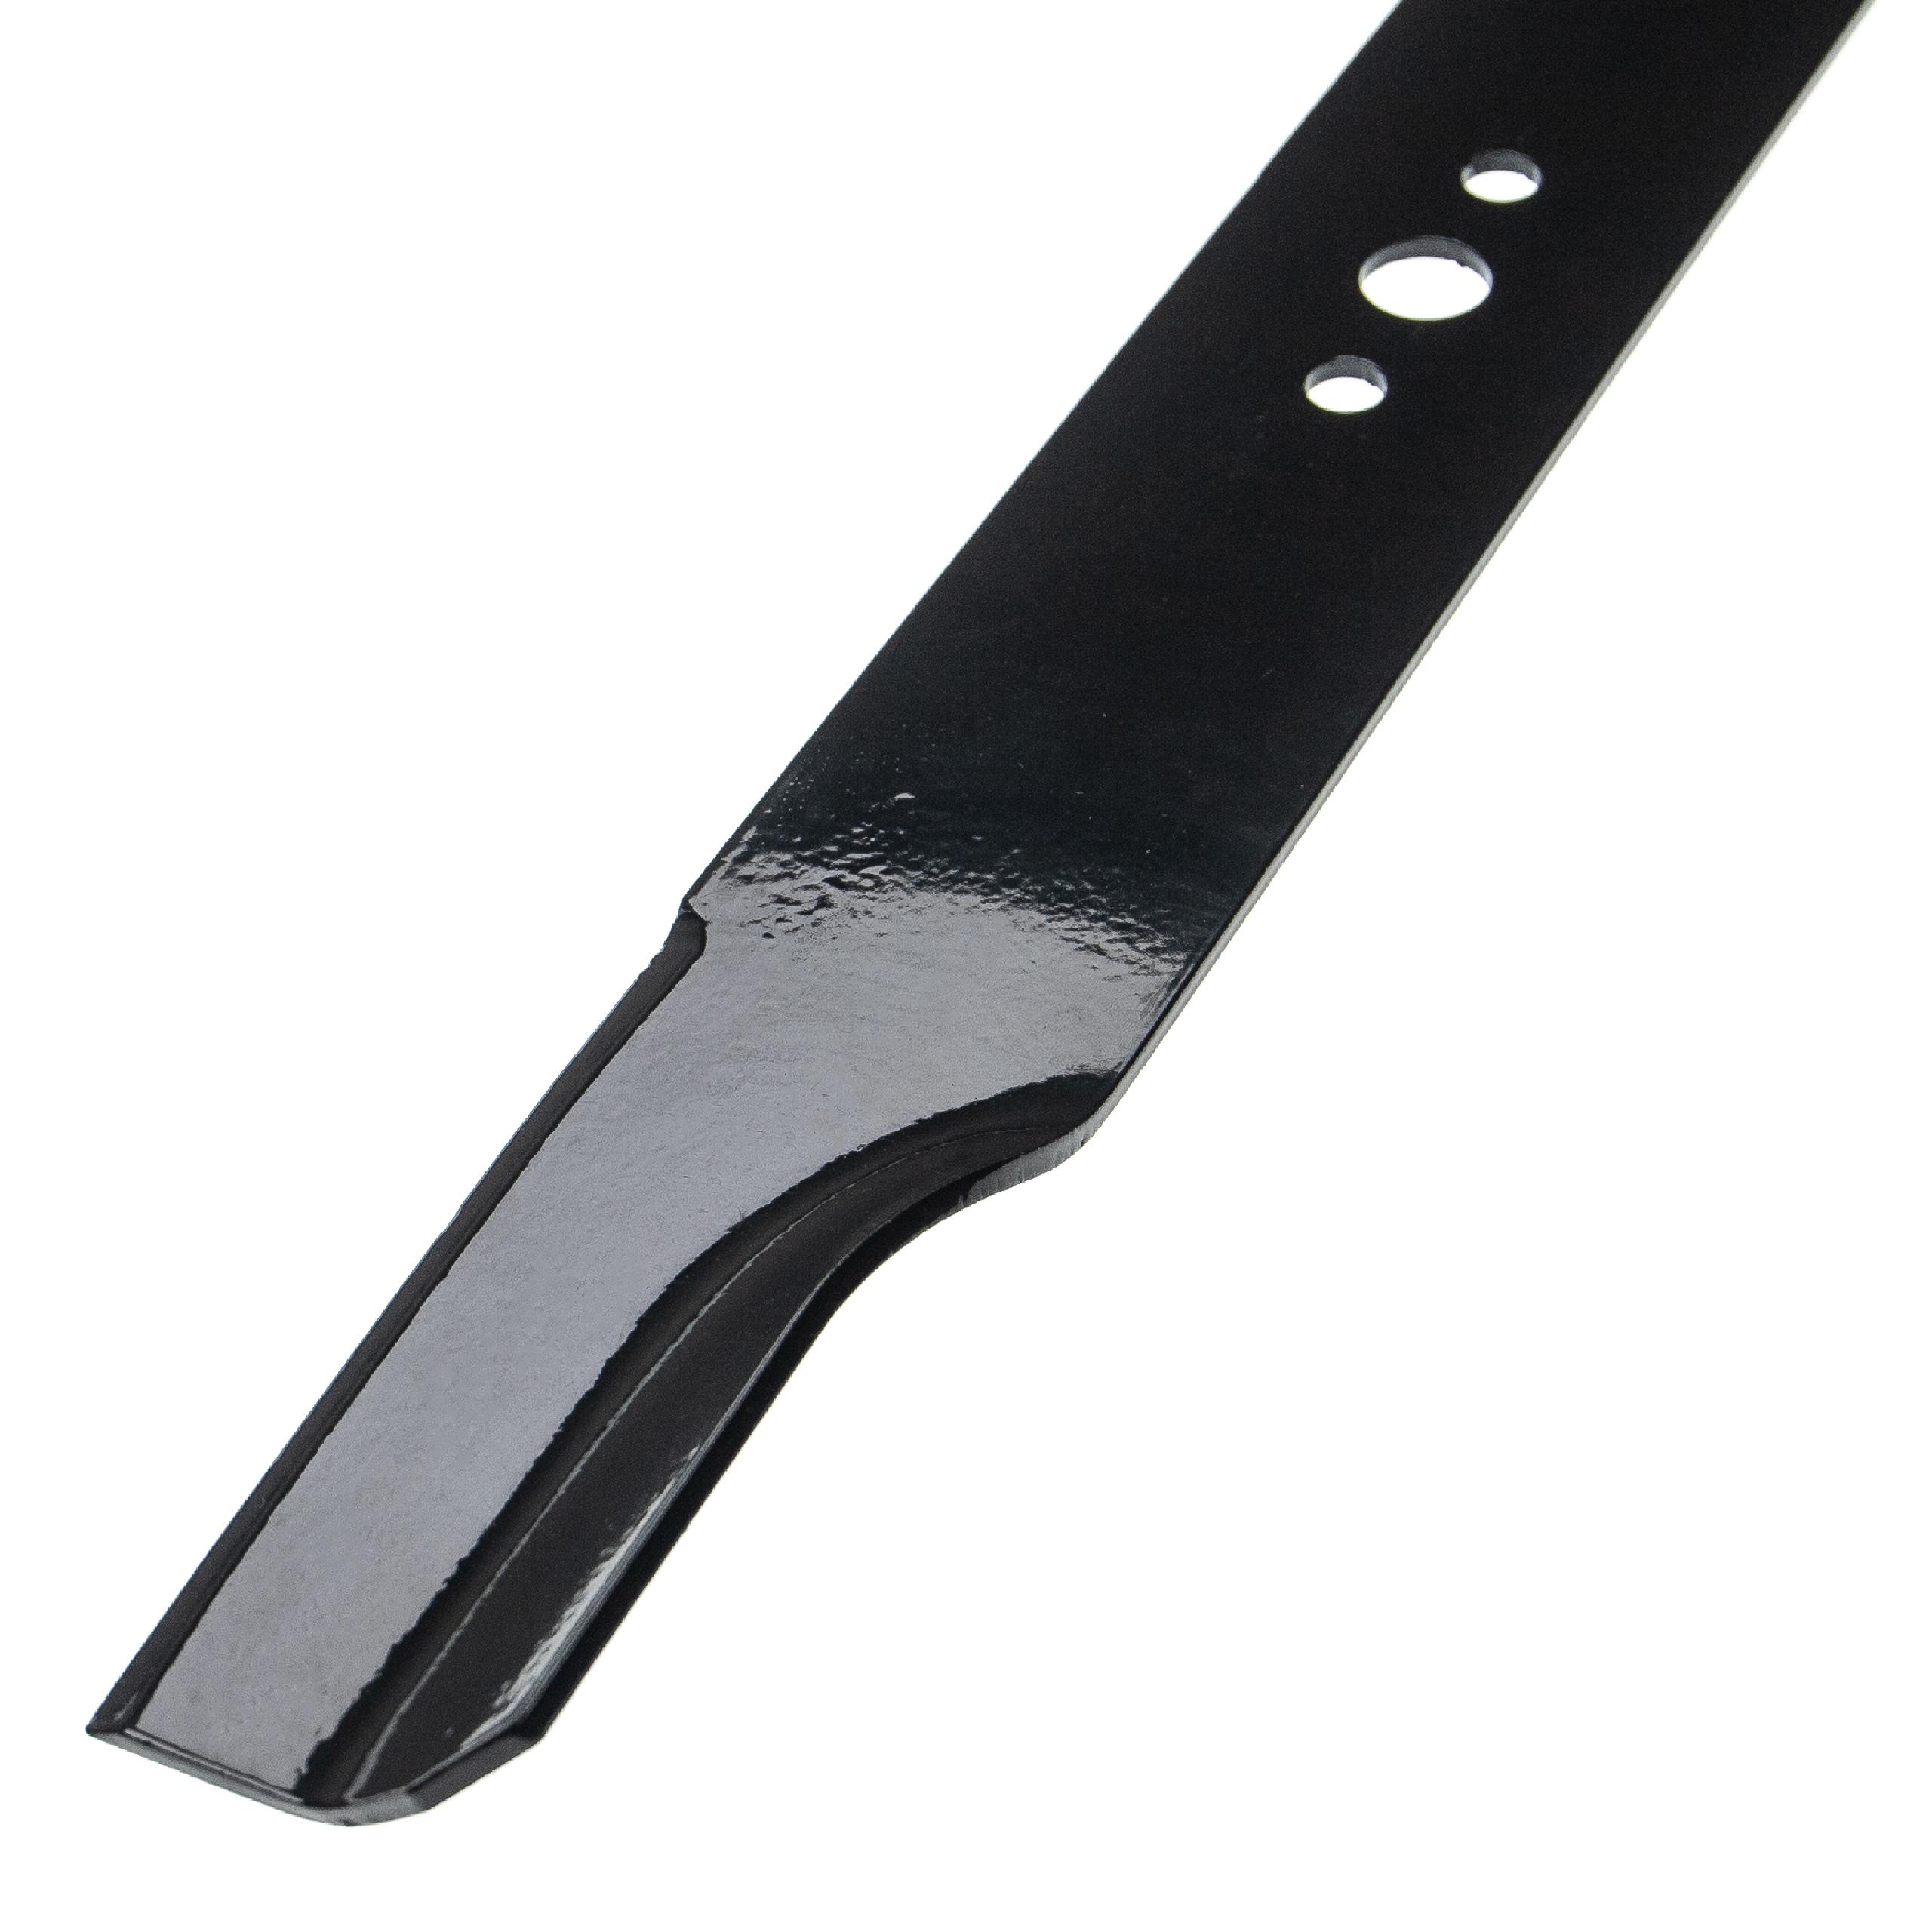 Messer als Ersatz für McCulloch 175064, 189028, 199377, 406712, 532165833 für Rasenmäher u.a. - Klinge